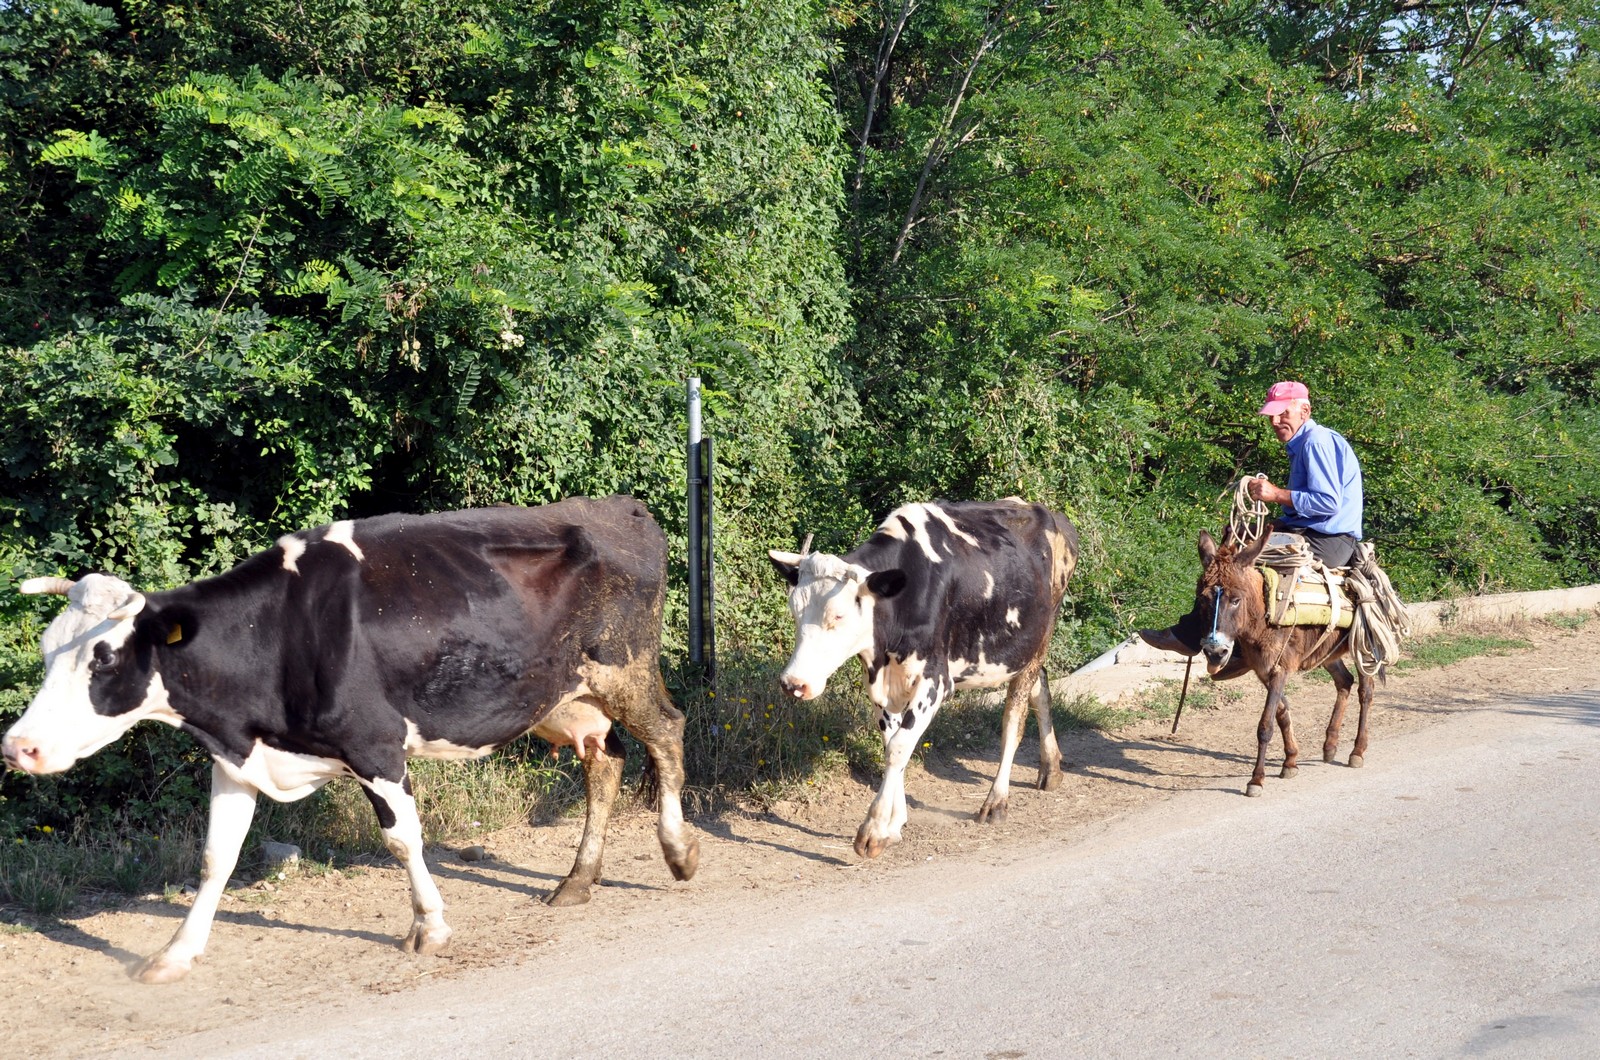 Viel landwirtschaftlicher Verkehr auf den albanischen Straen - Lupe Reisen